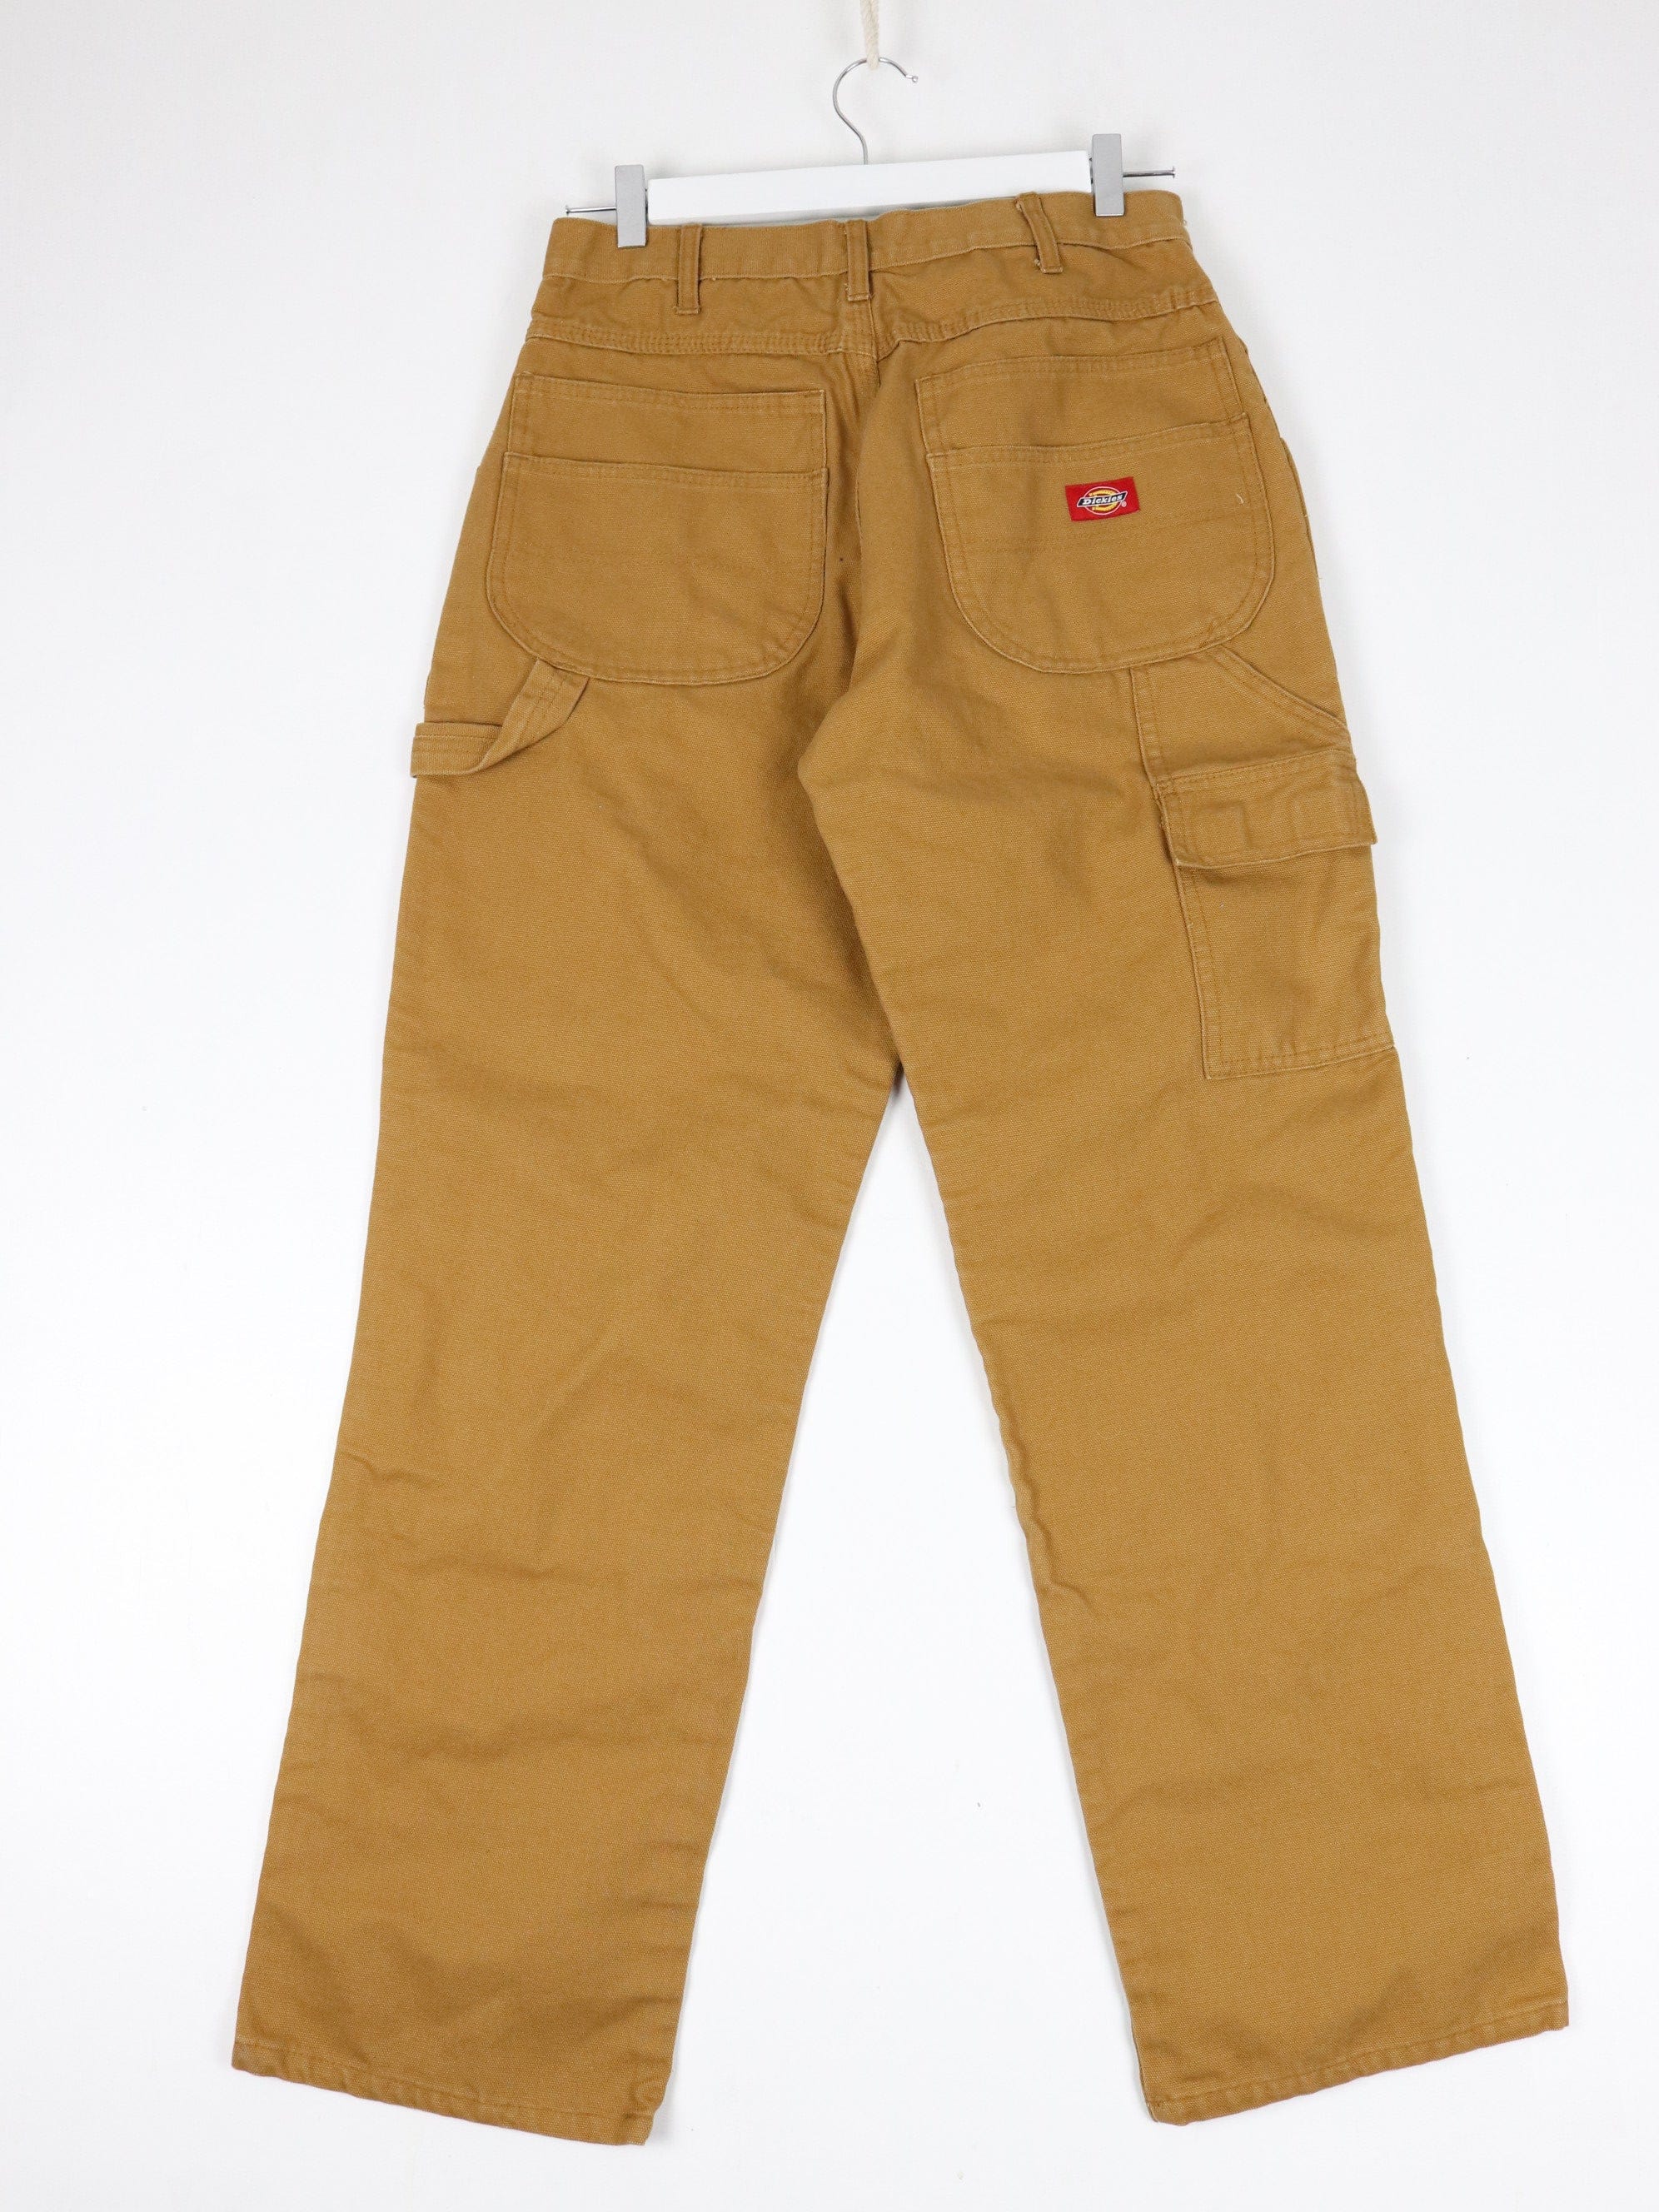 Dickies Pants Fits Mens 30 x 32 Brown Double Knee Work Wear – Proper Vintage